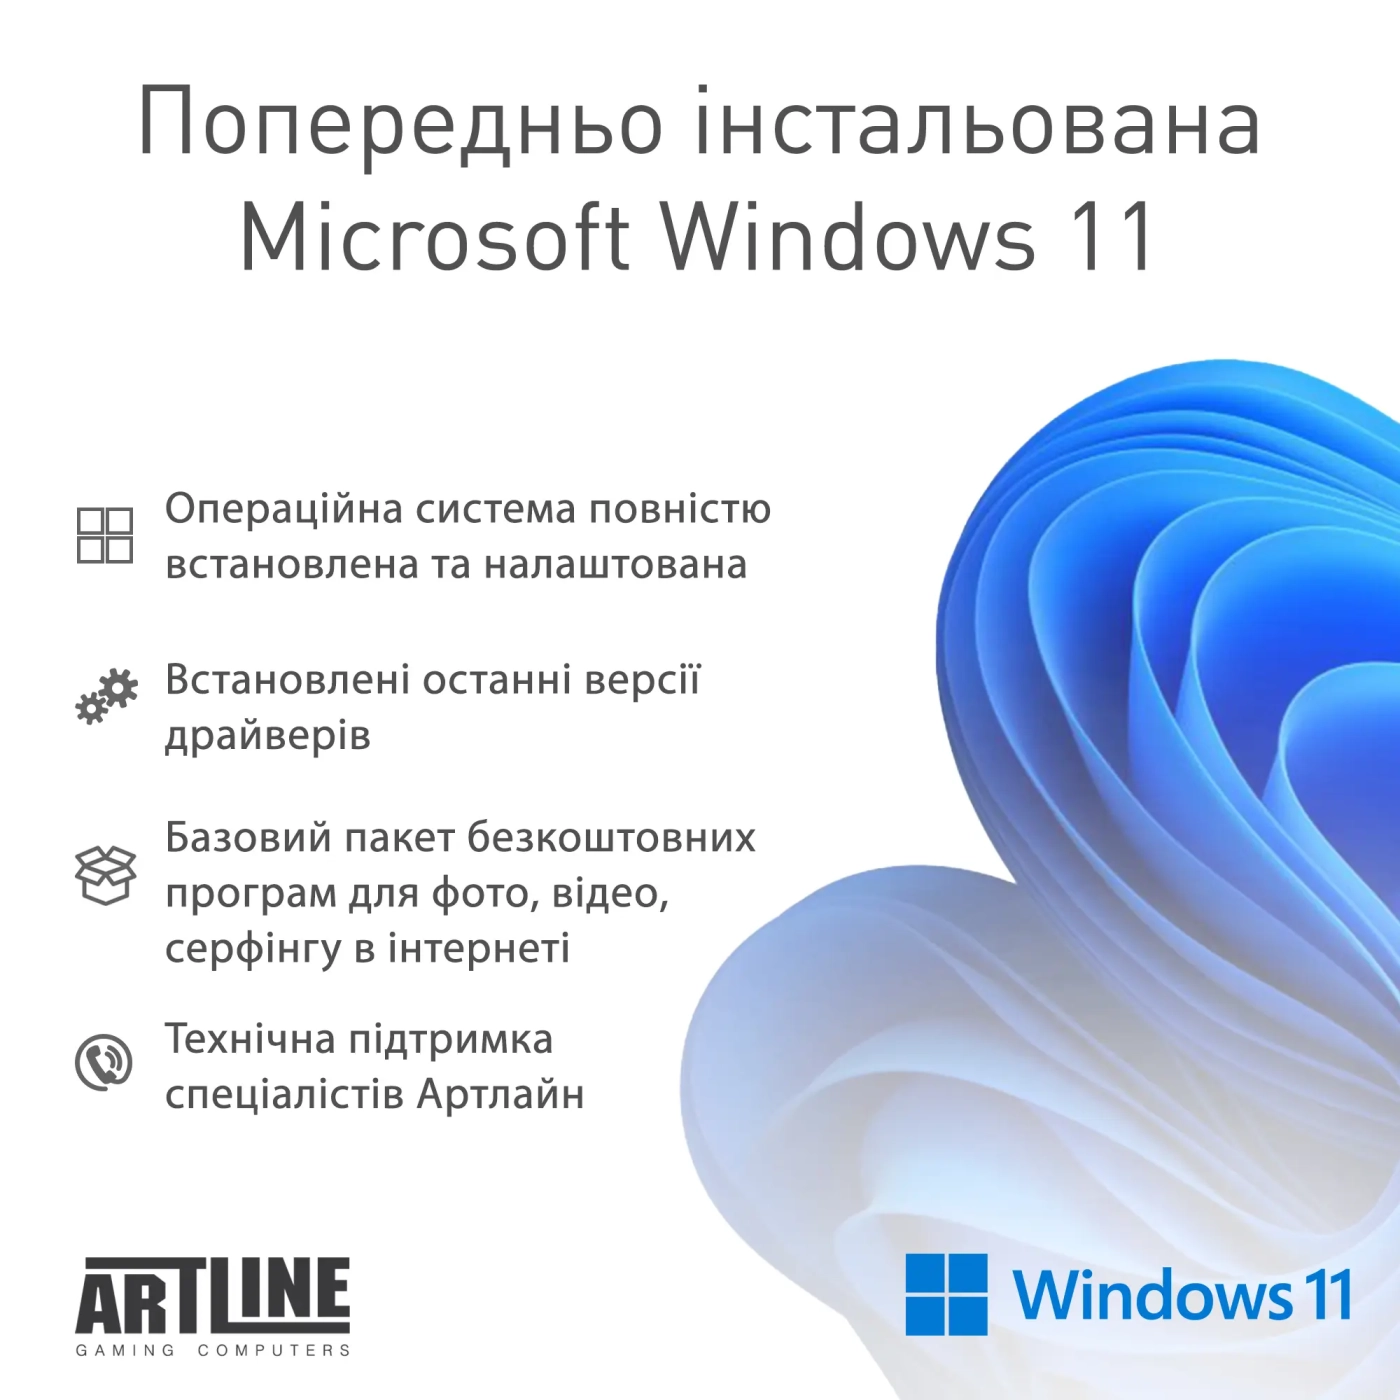 Купить Компьютер ARTLINE Gaming Y60 Windows 11 Home (Y60v22) - фото 9